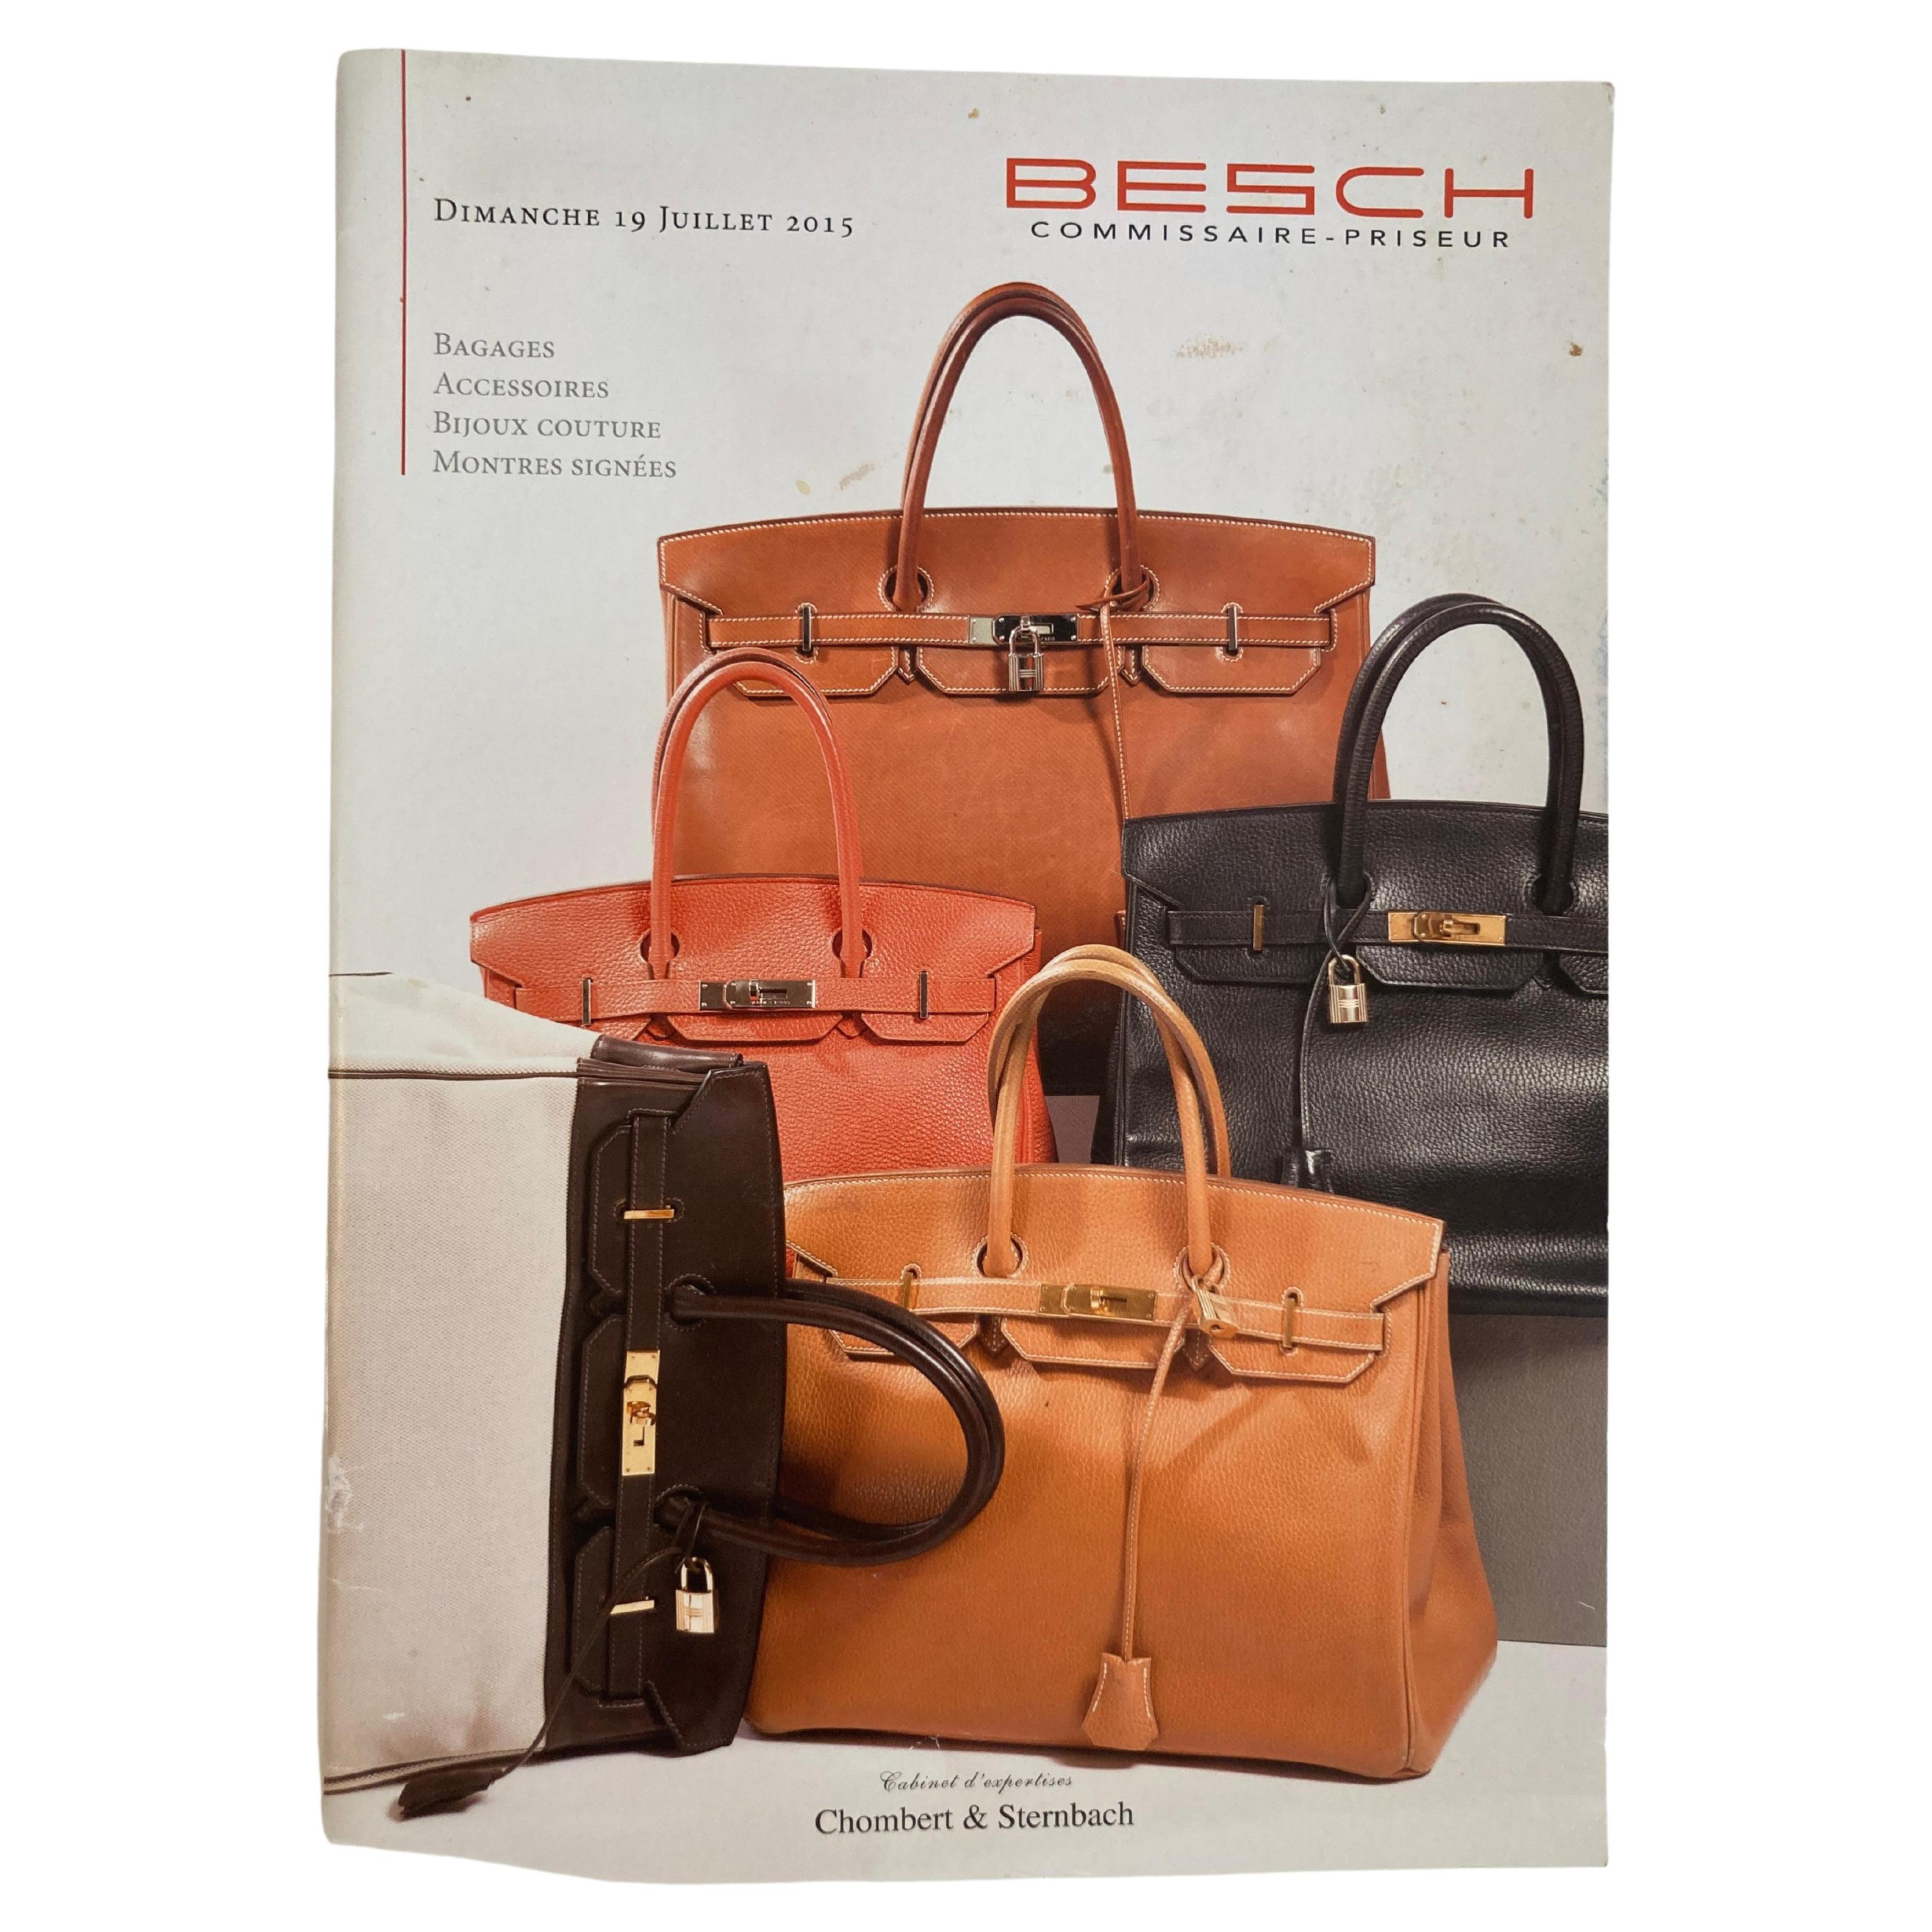 Catalogue des ventes aux enchères de haute couture et de luxe en cuir de Besch Cannes, France 2015